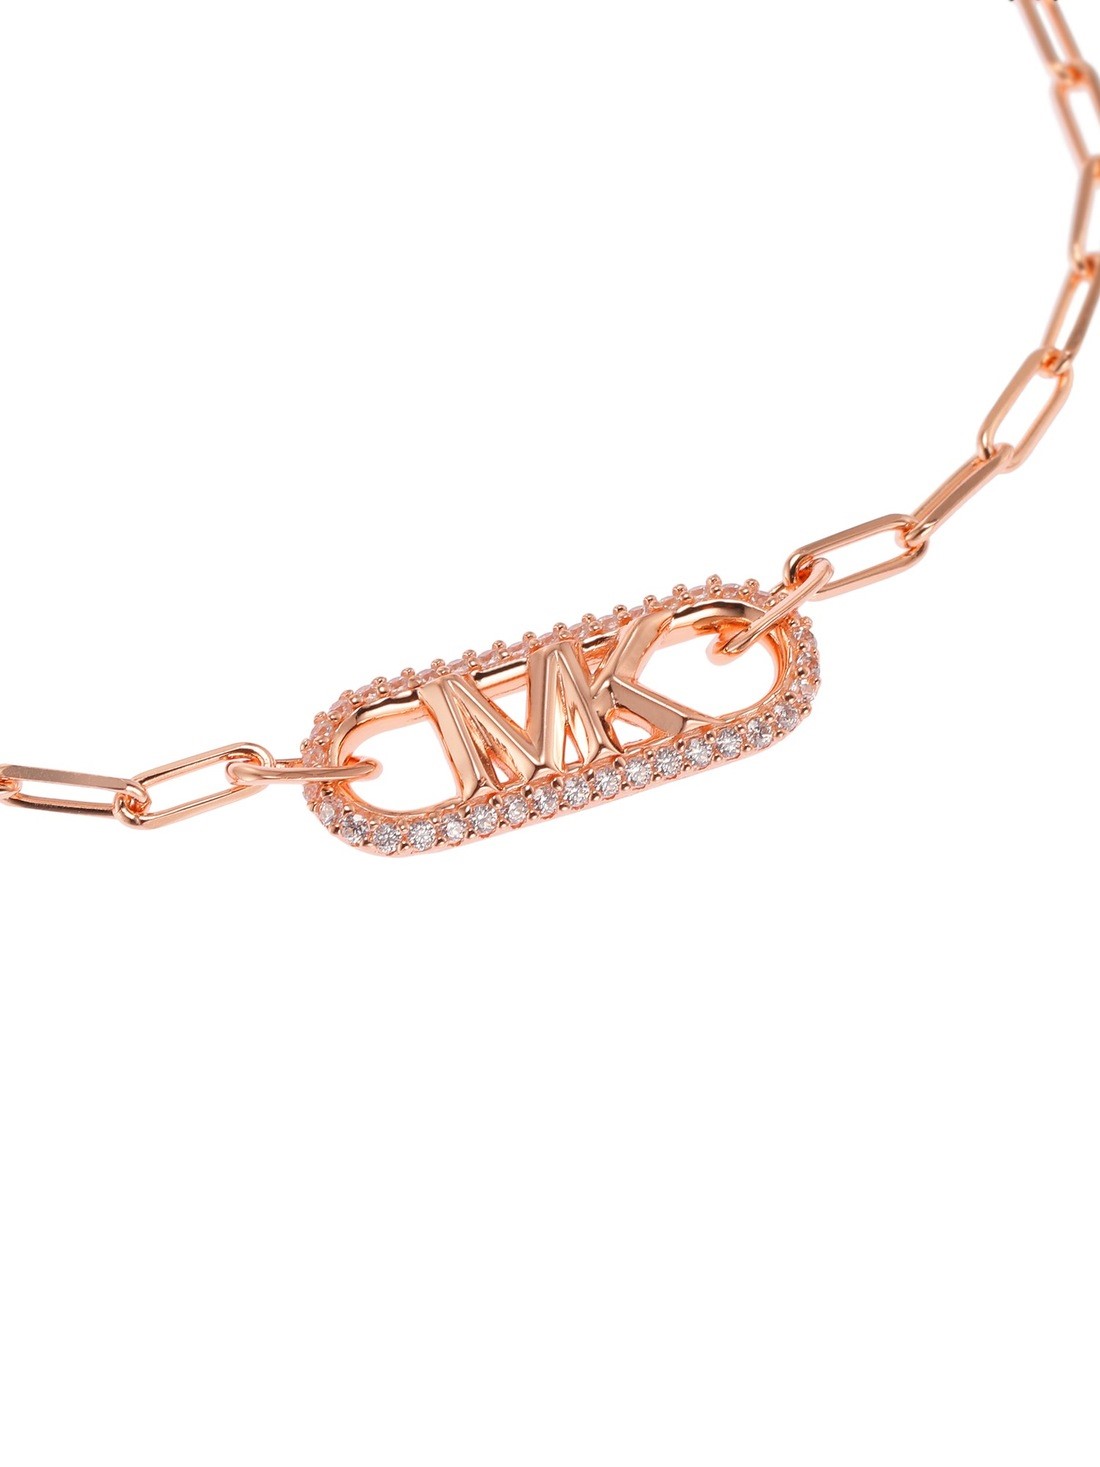 Michael Kors Rose Gold Heart Charm Bracelet for Women Online India at